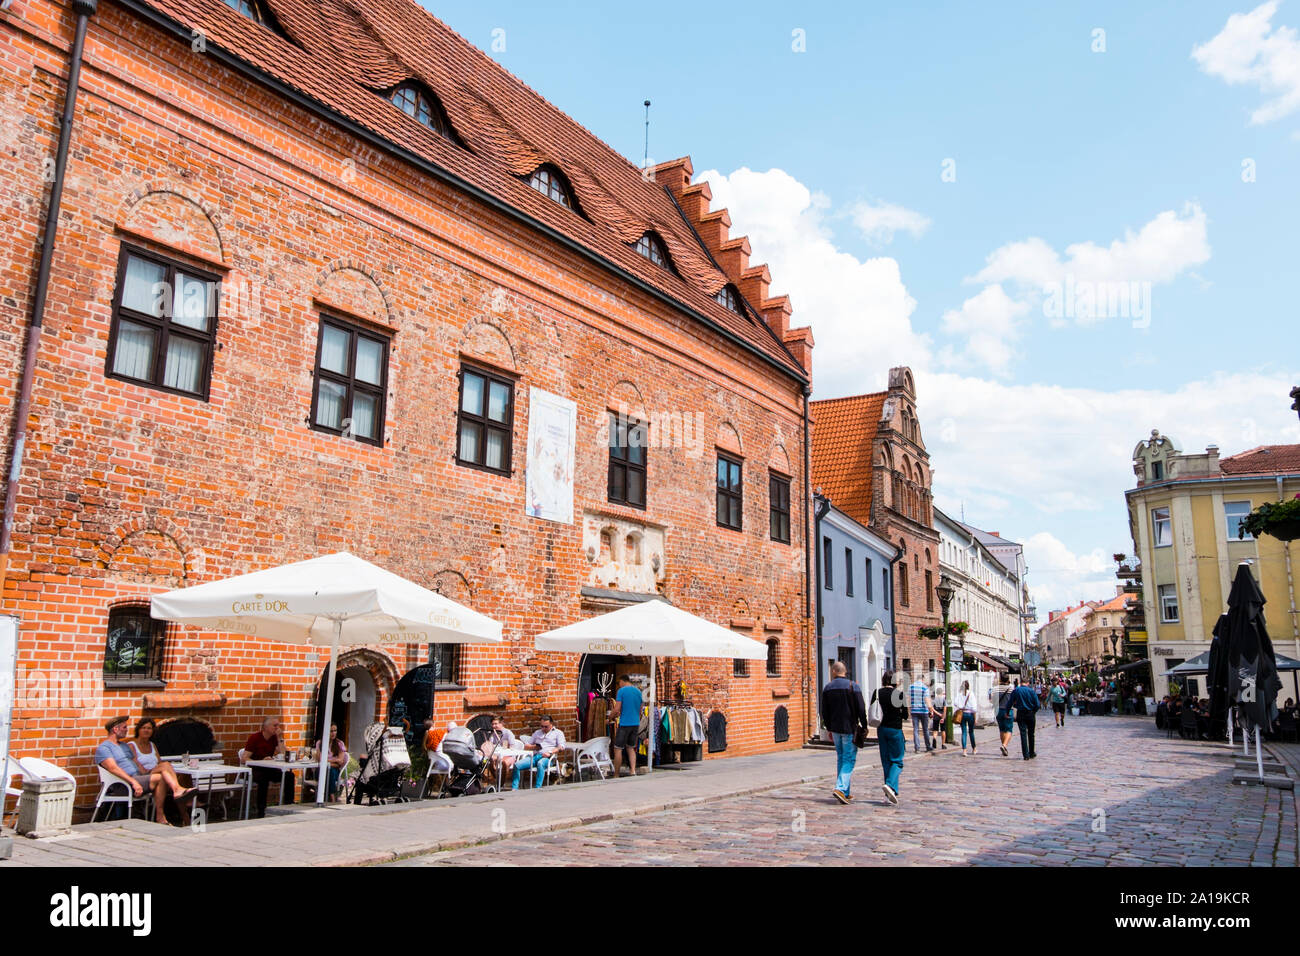 Vilniaus gatve, old town, Kaunas, Lithuania Stock Photo